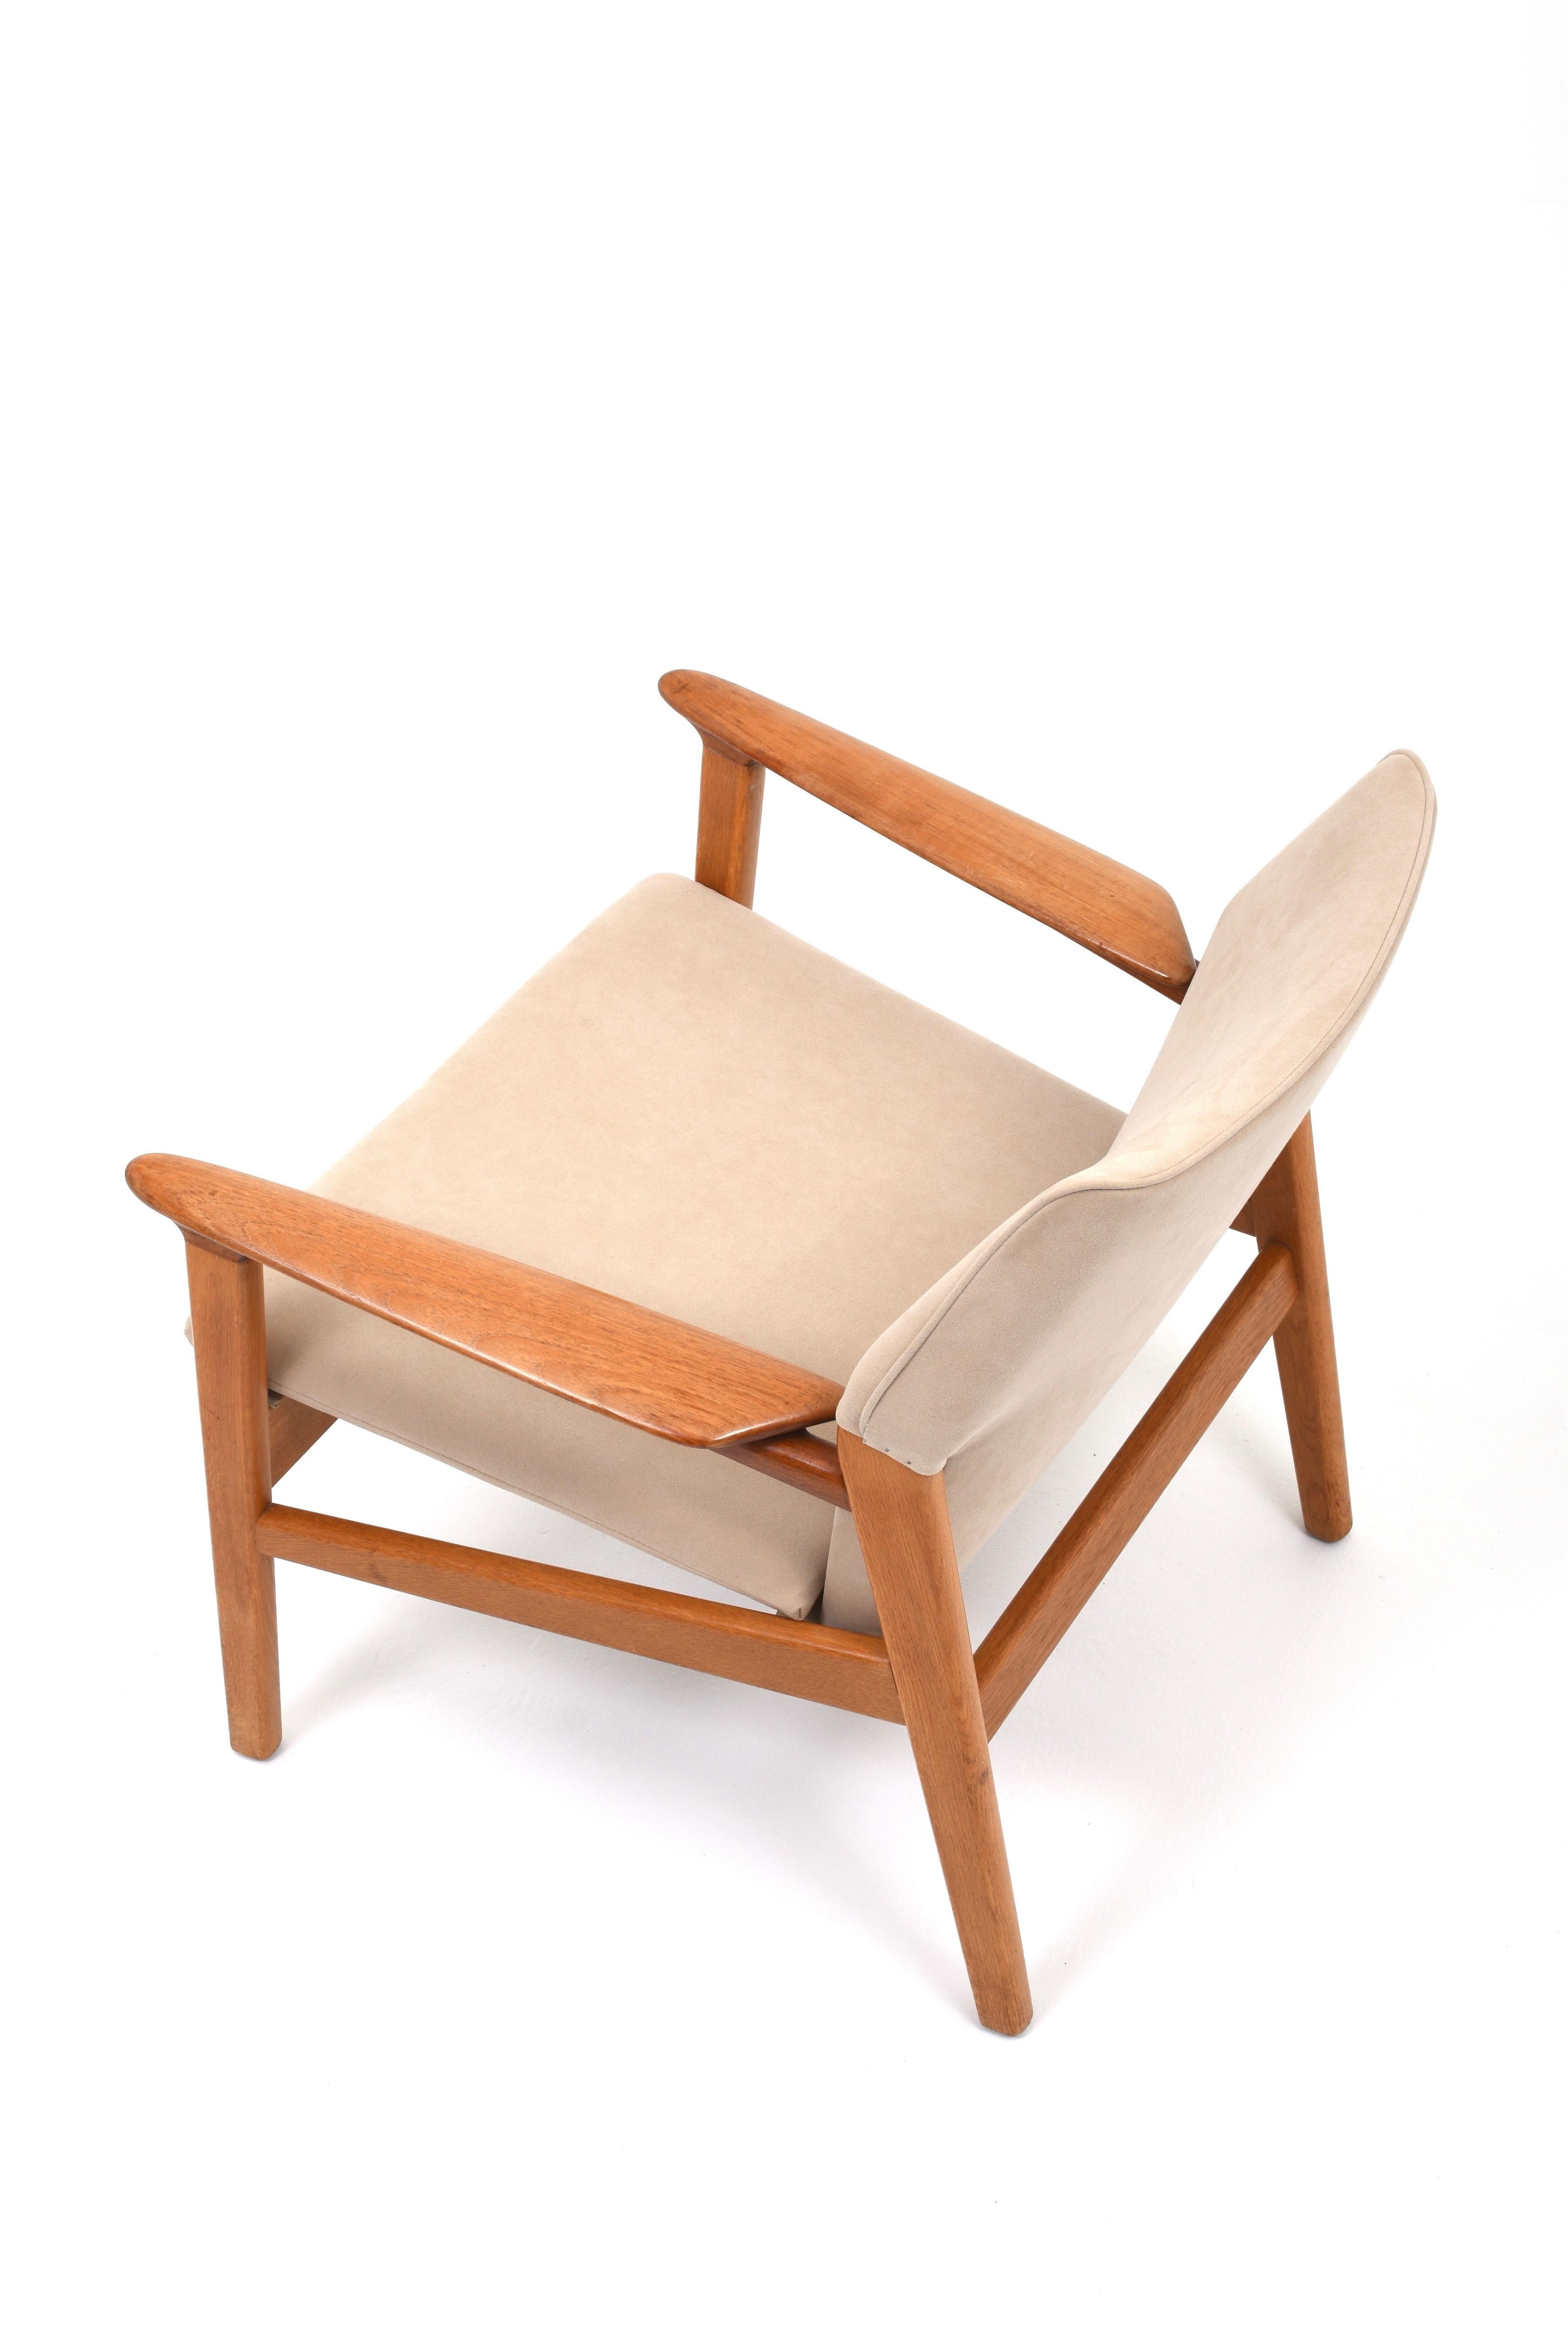 Fauteuil fantastiquement confortable et bien conçu par Hans Olsen pour Gärsnäs, années 1960.

Le fauteuil a été retapissé et nous l'avons recouvert d'un tissu beige ressemblant à du daim. Le cadre est en chêne et en teck.
